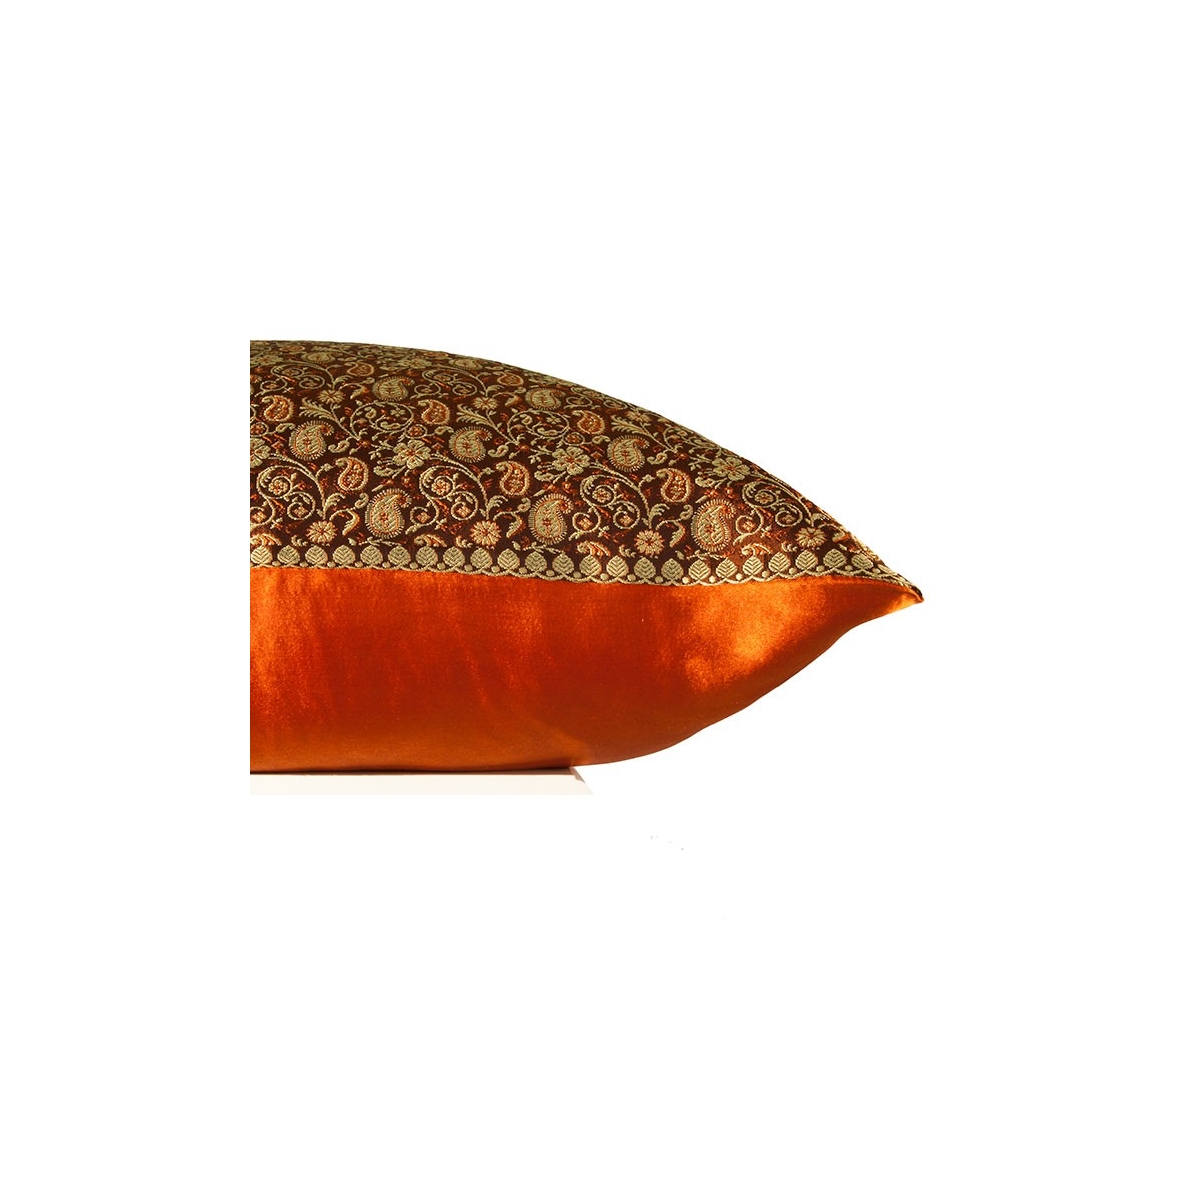 Fodera cuscino damascato color Arancio, in seta arricchita da preziosi  dettagli, motivo Cachemire